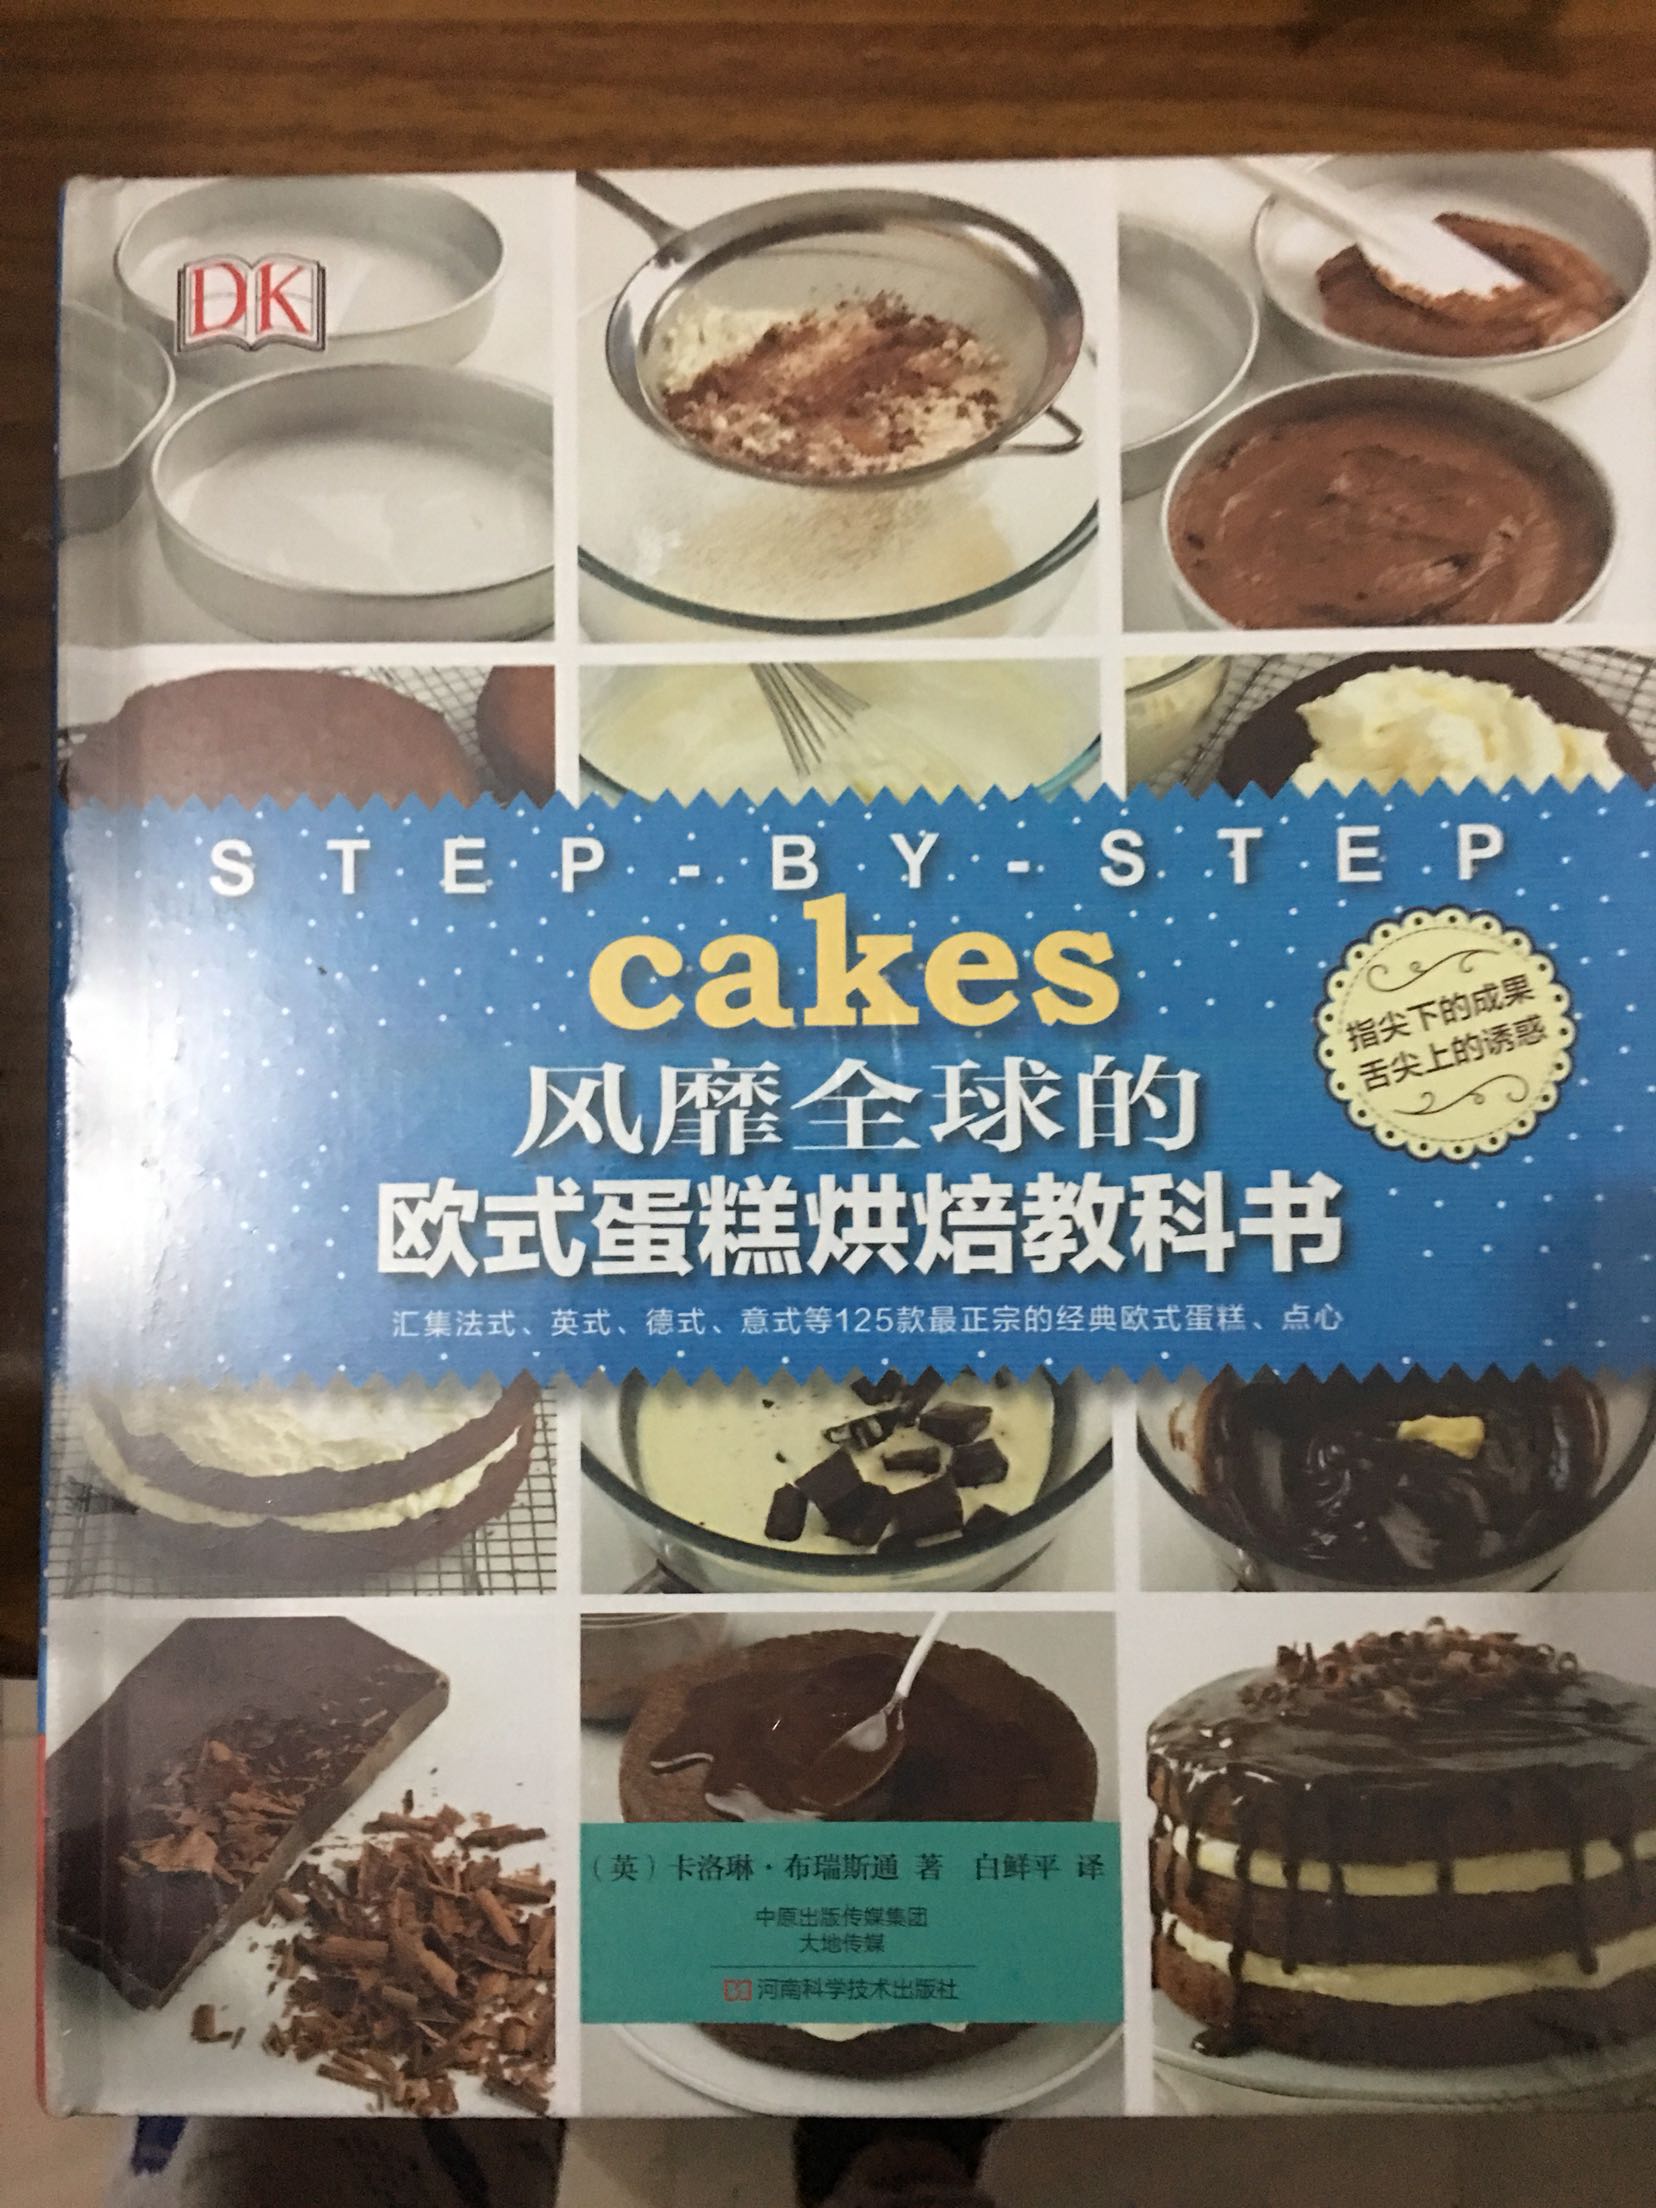 买了烤箱 看到这本书就买了 看看外国的糕点用这书能做出来不